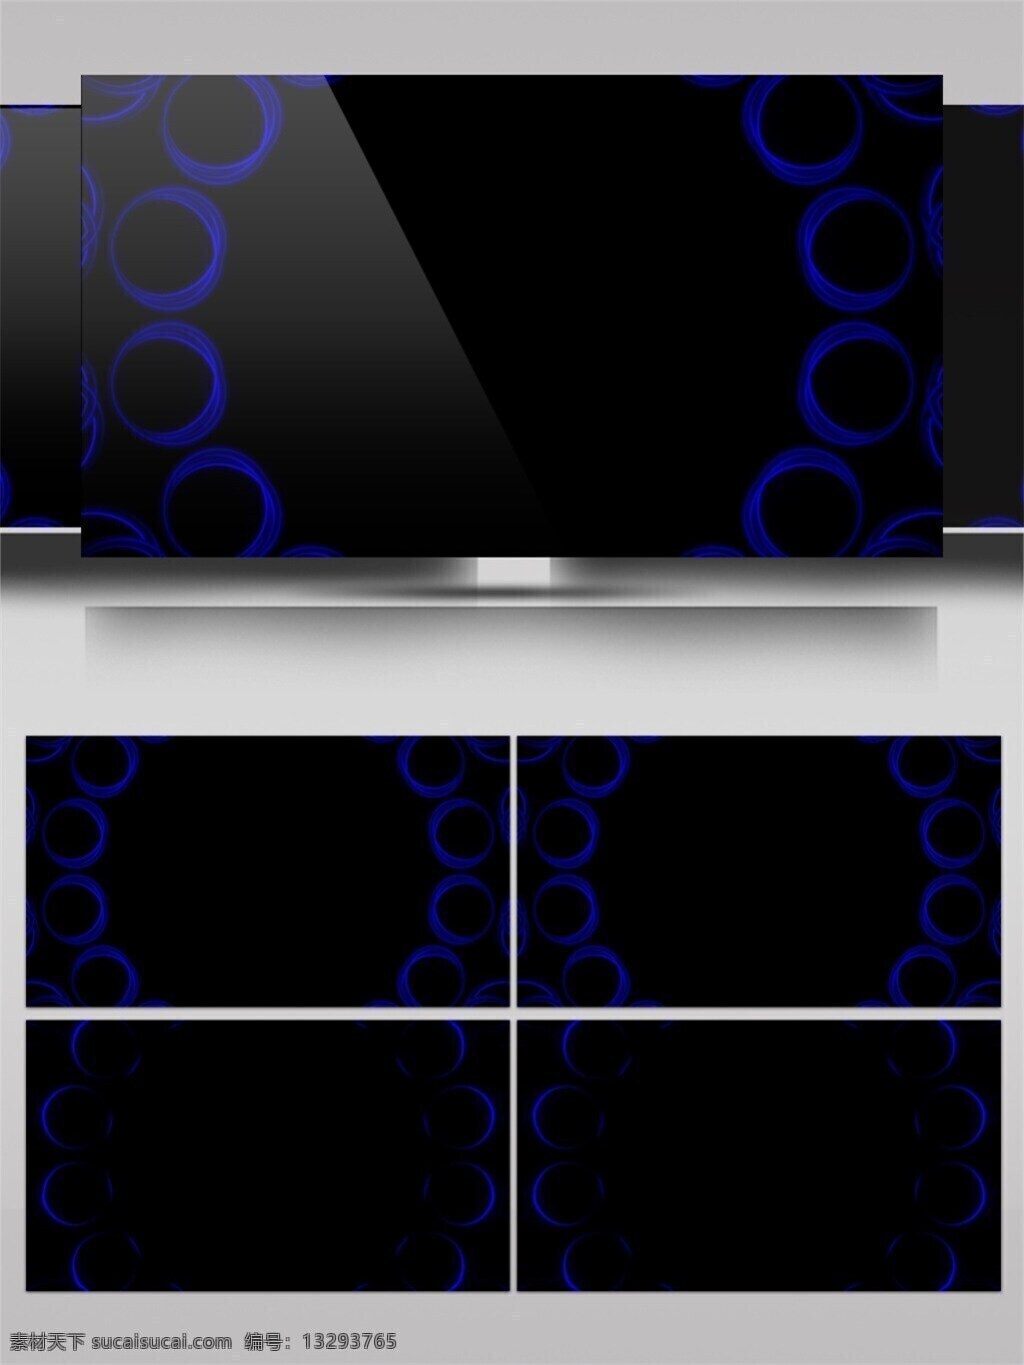 蓝色 圆环 组合 花纹 高清 视频 科技蓝色 圆环组合 科技感 视频素材 动态视频素材